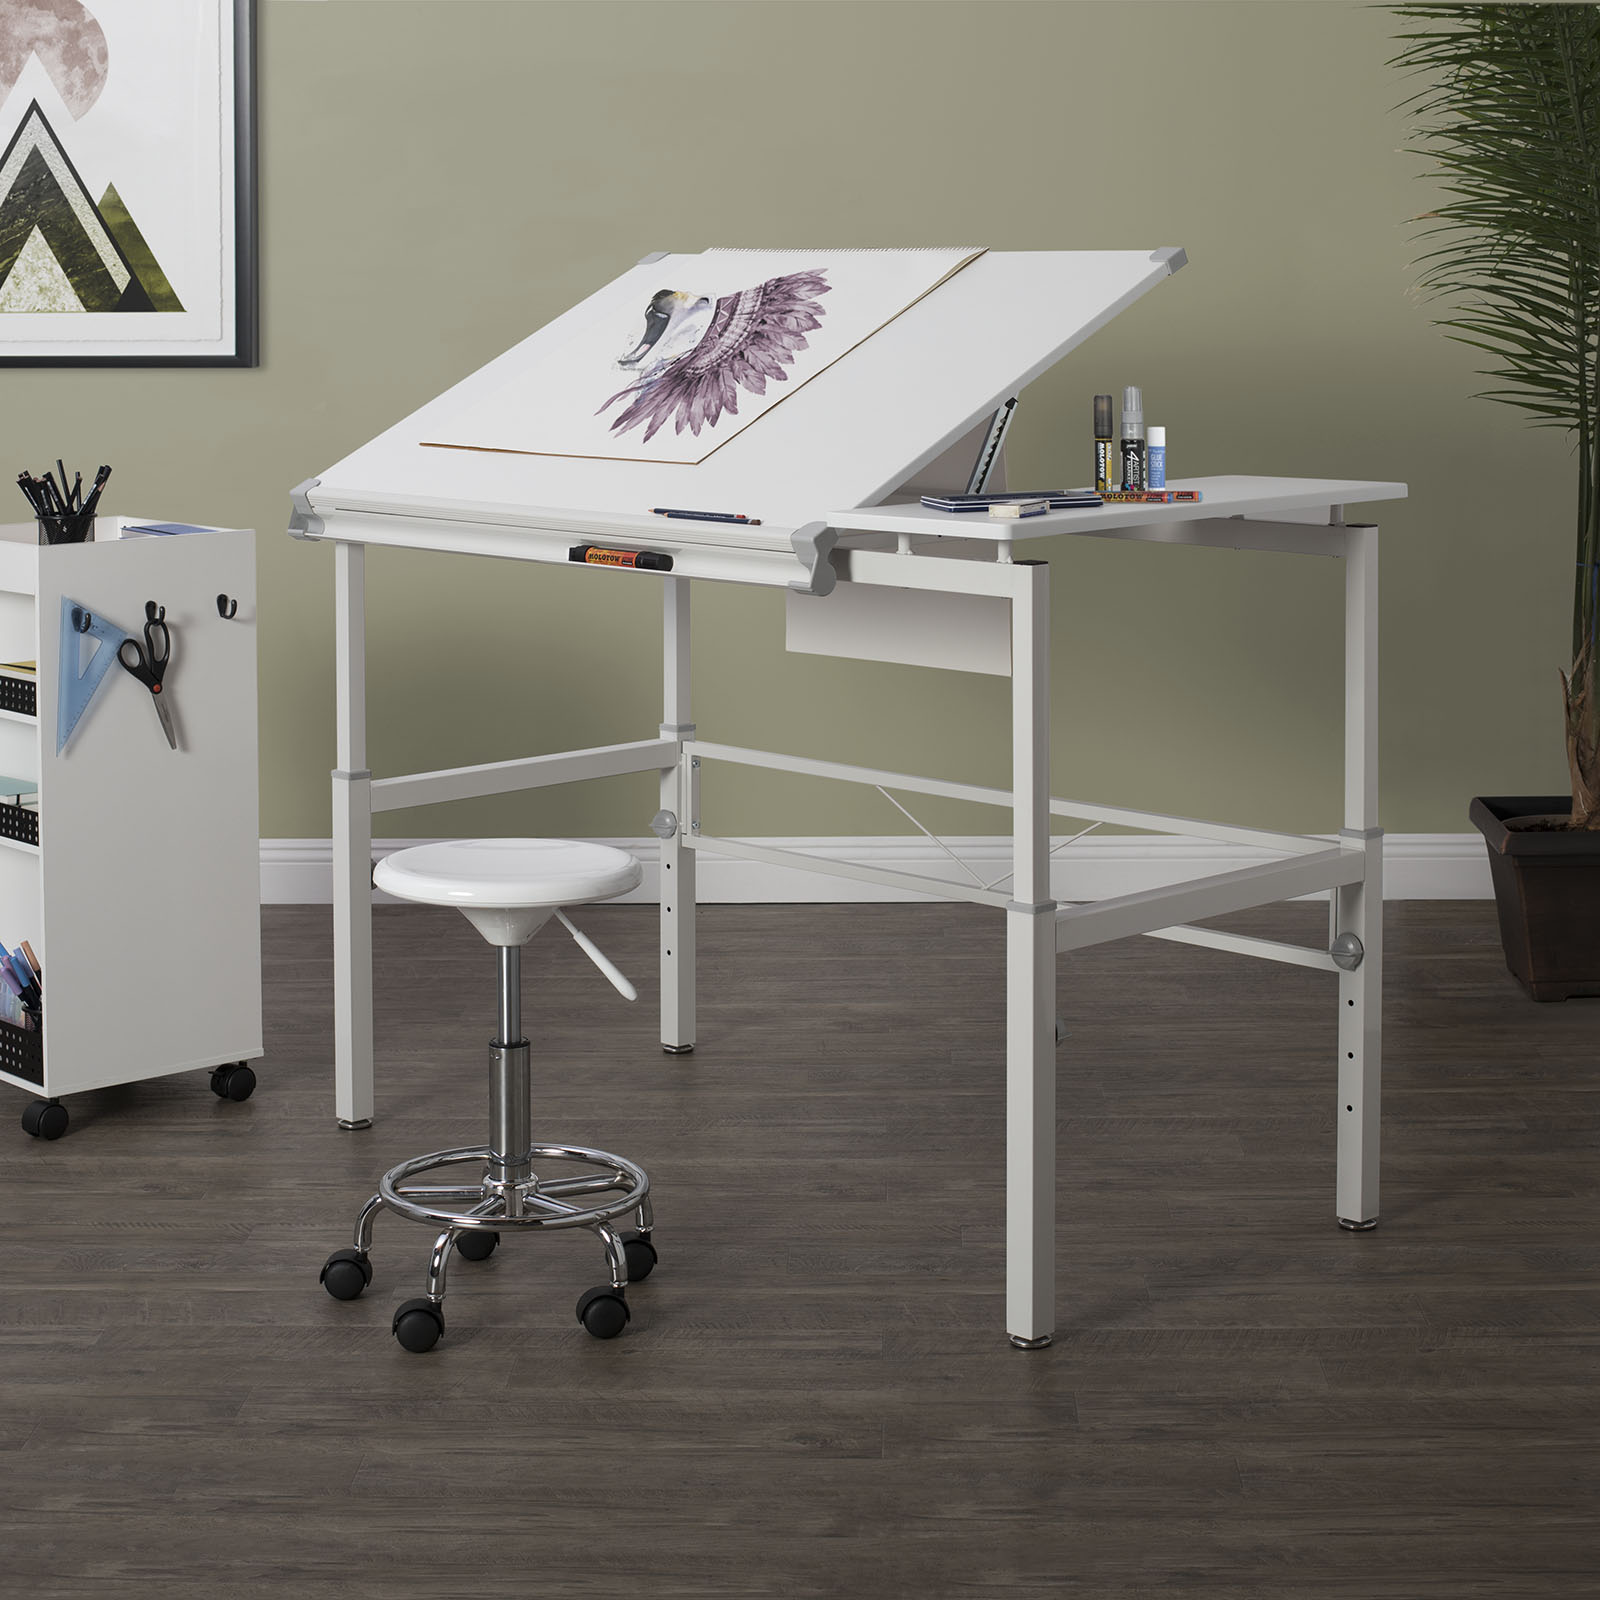  Studio Designs Graphix II Pro Line - Mesa de dibujo ajustable  en altura ajustable, con parte superior inclinable de 39.5 x 30 pulgadas,  color blanco : Hogar y Cocina